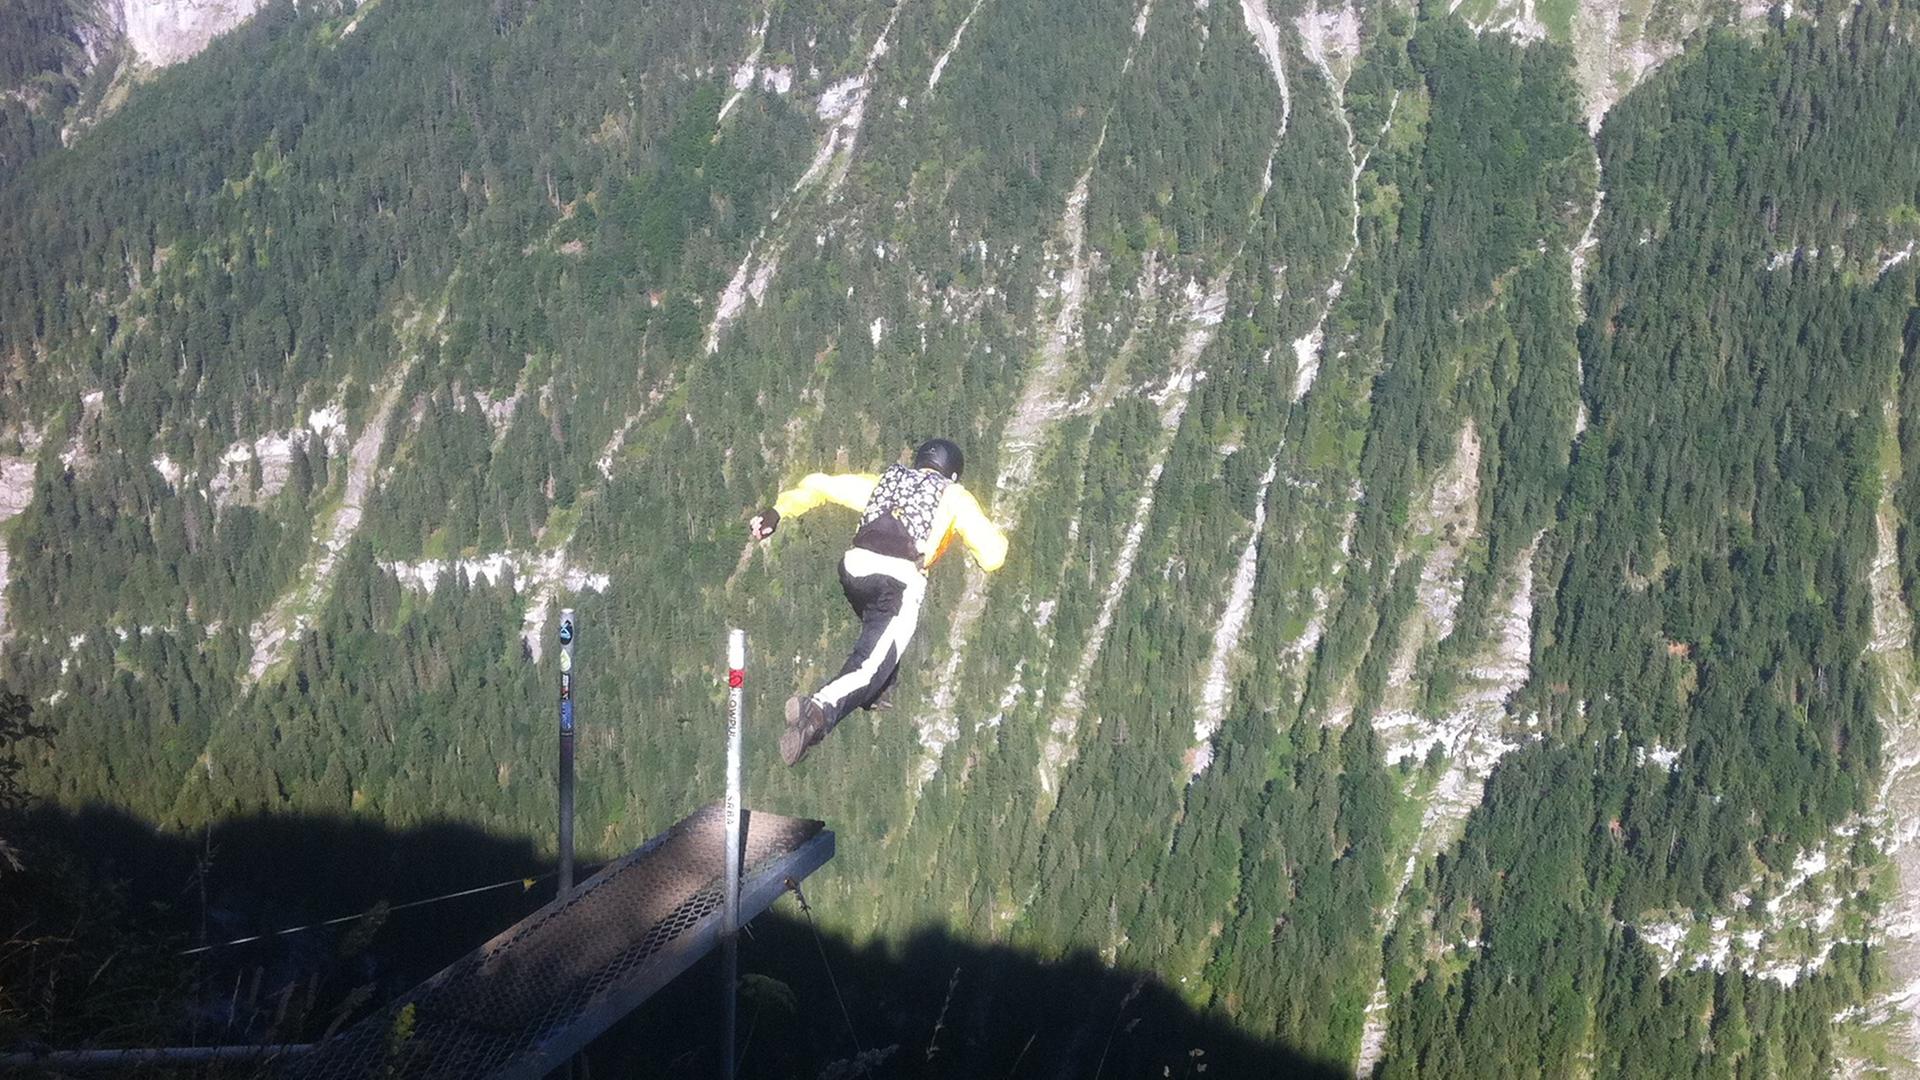 Die Absprungstelle "High ultimate" im Schweizer Lauterbrunnental. Von der Rampe geht es 700 Meter in die Tiefe